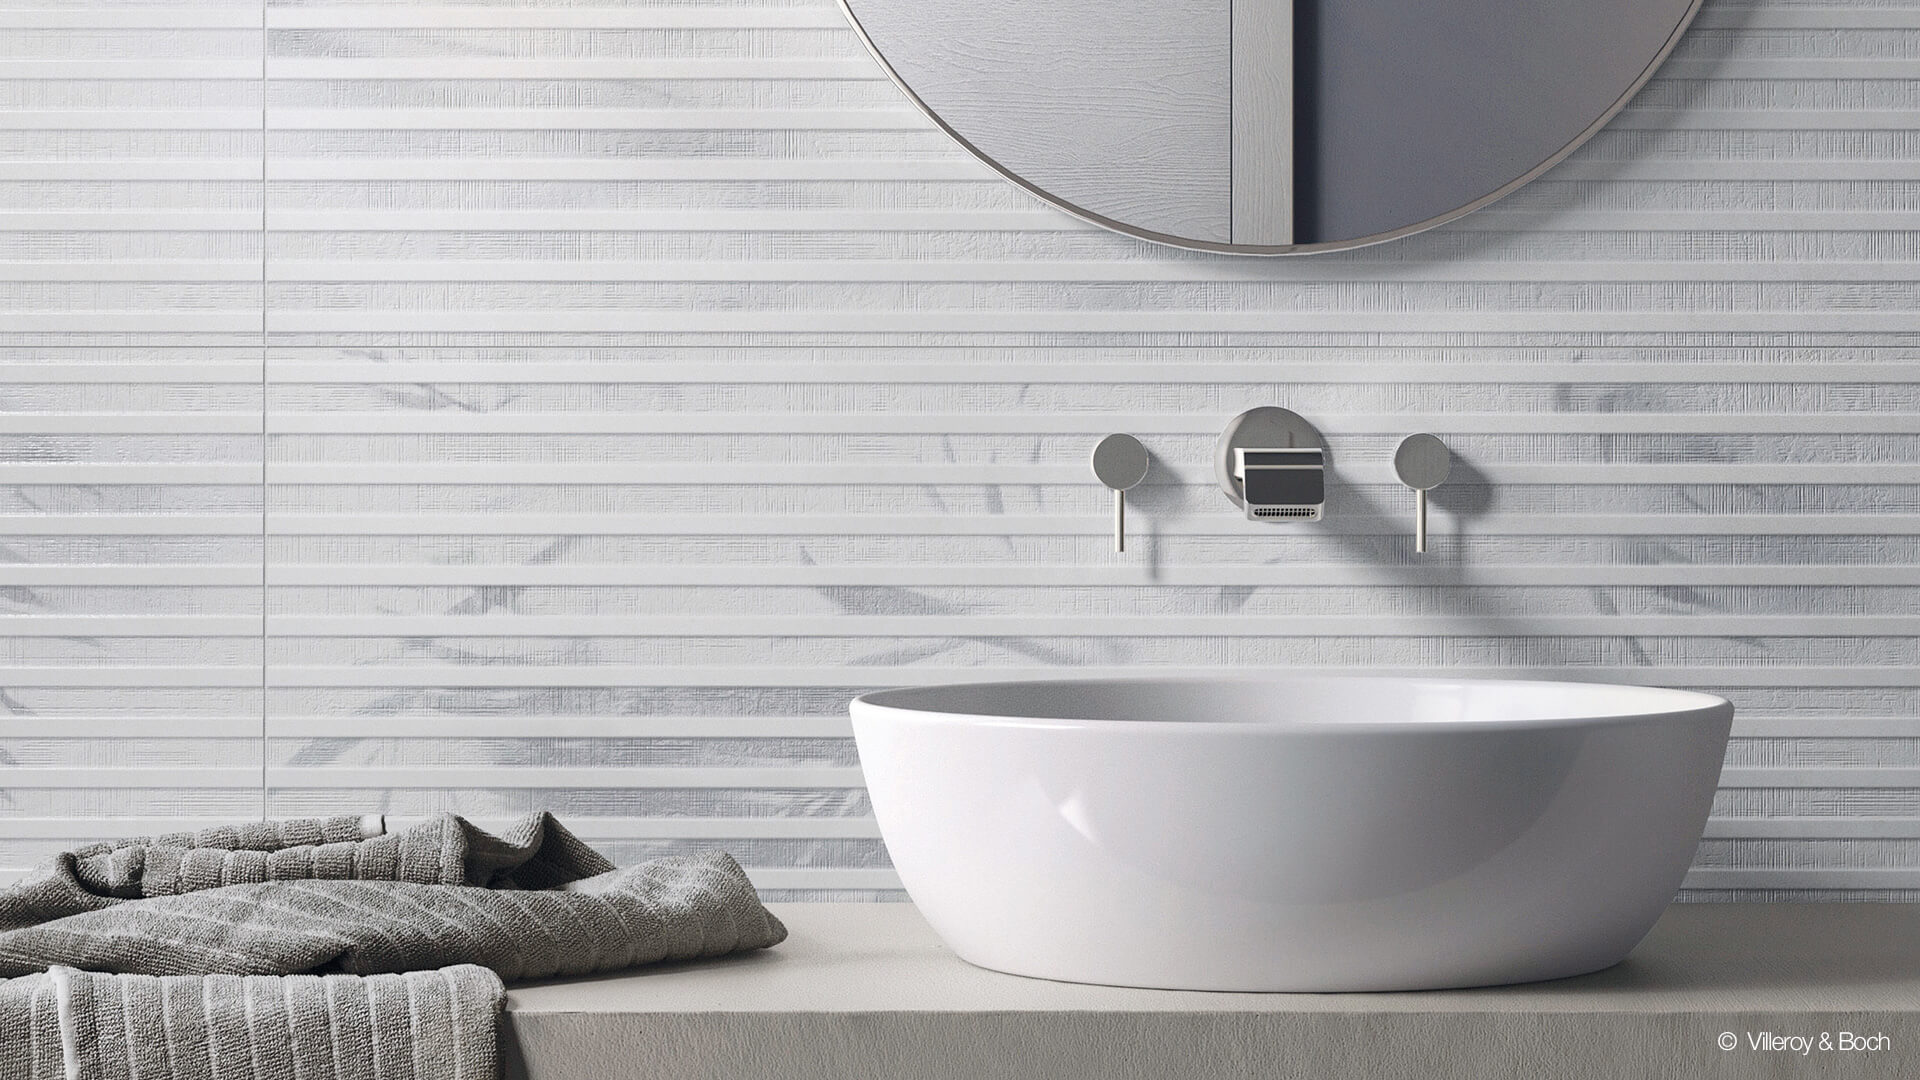 Waschtisch, Spiegel und Handtuch vor einer Wand mit modernen Fliesenmosaik, © Villeroy & Boch